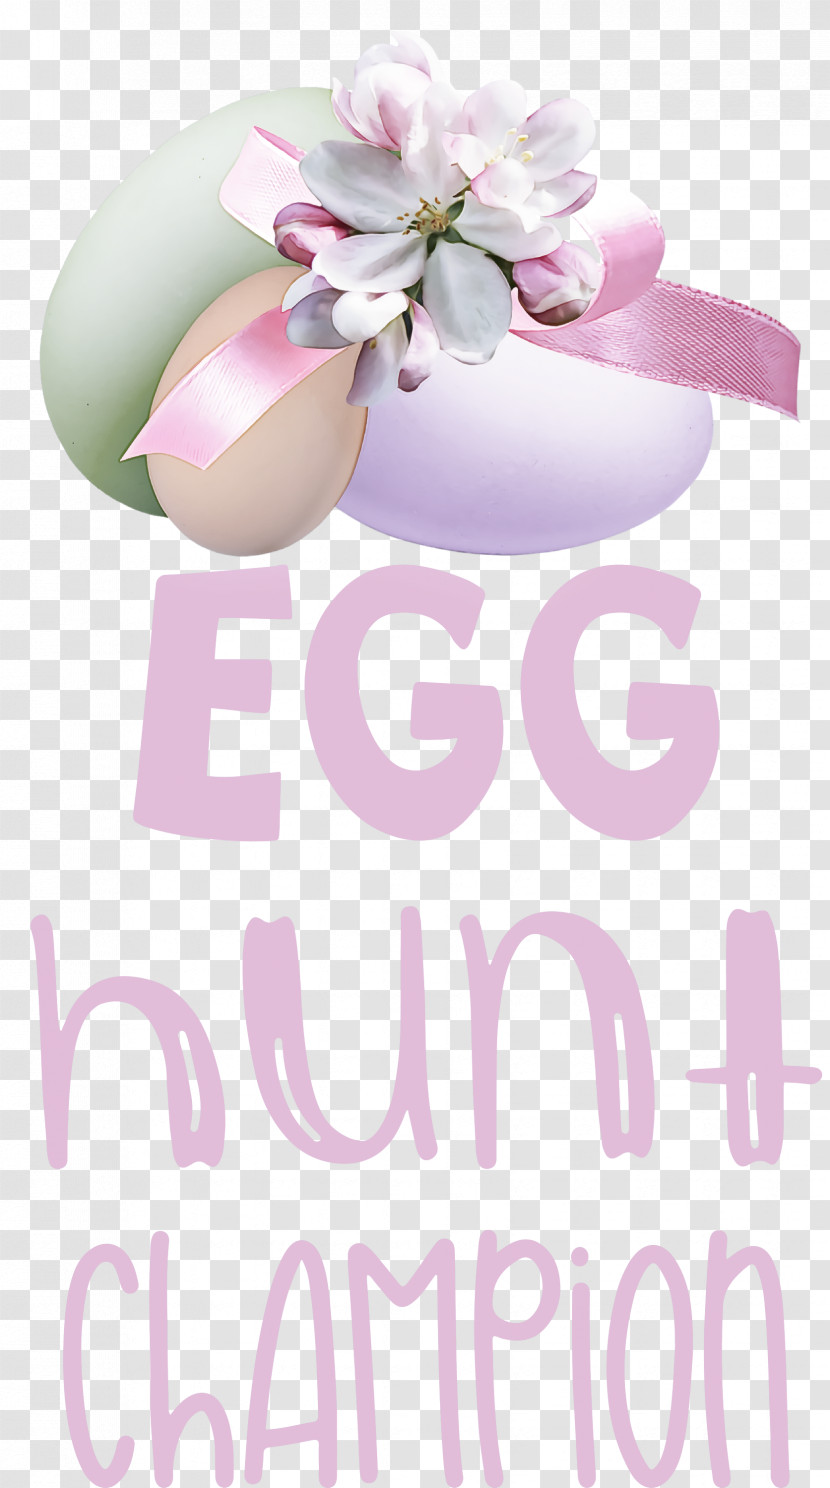 Egg Hunt Champion Easter Day Egg Hunt Transparent PNG